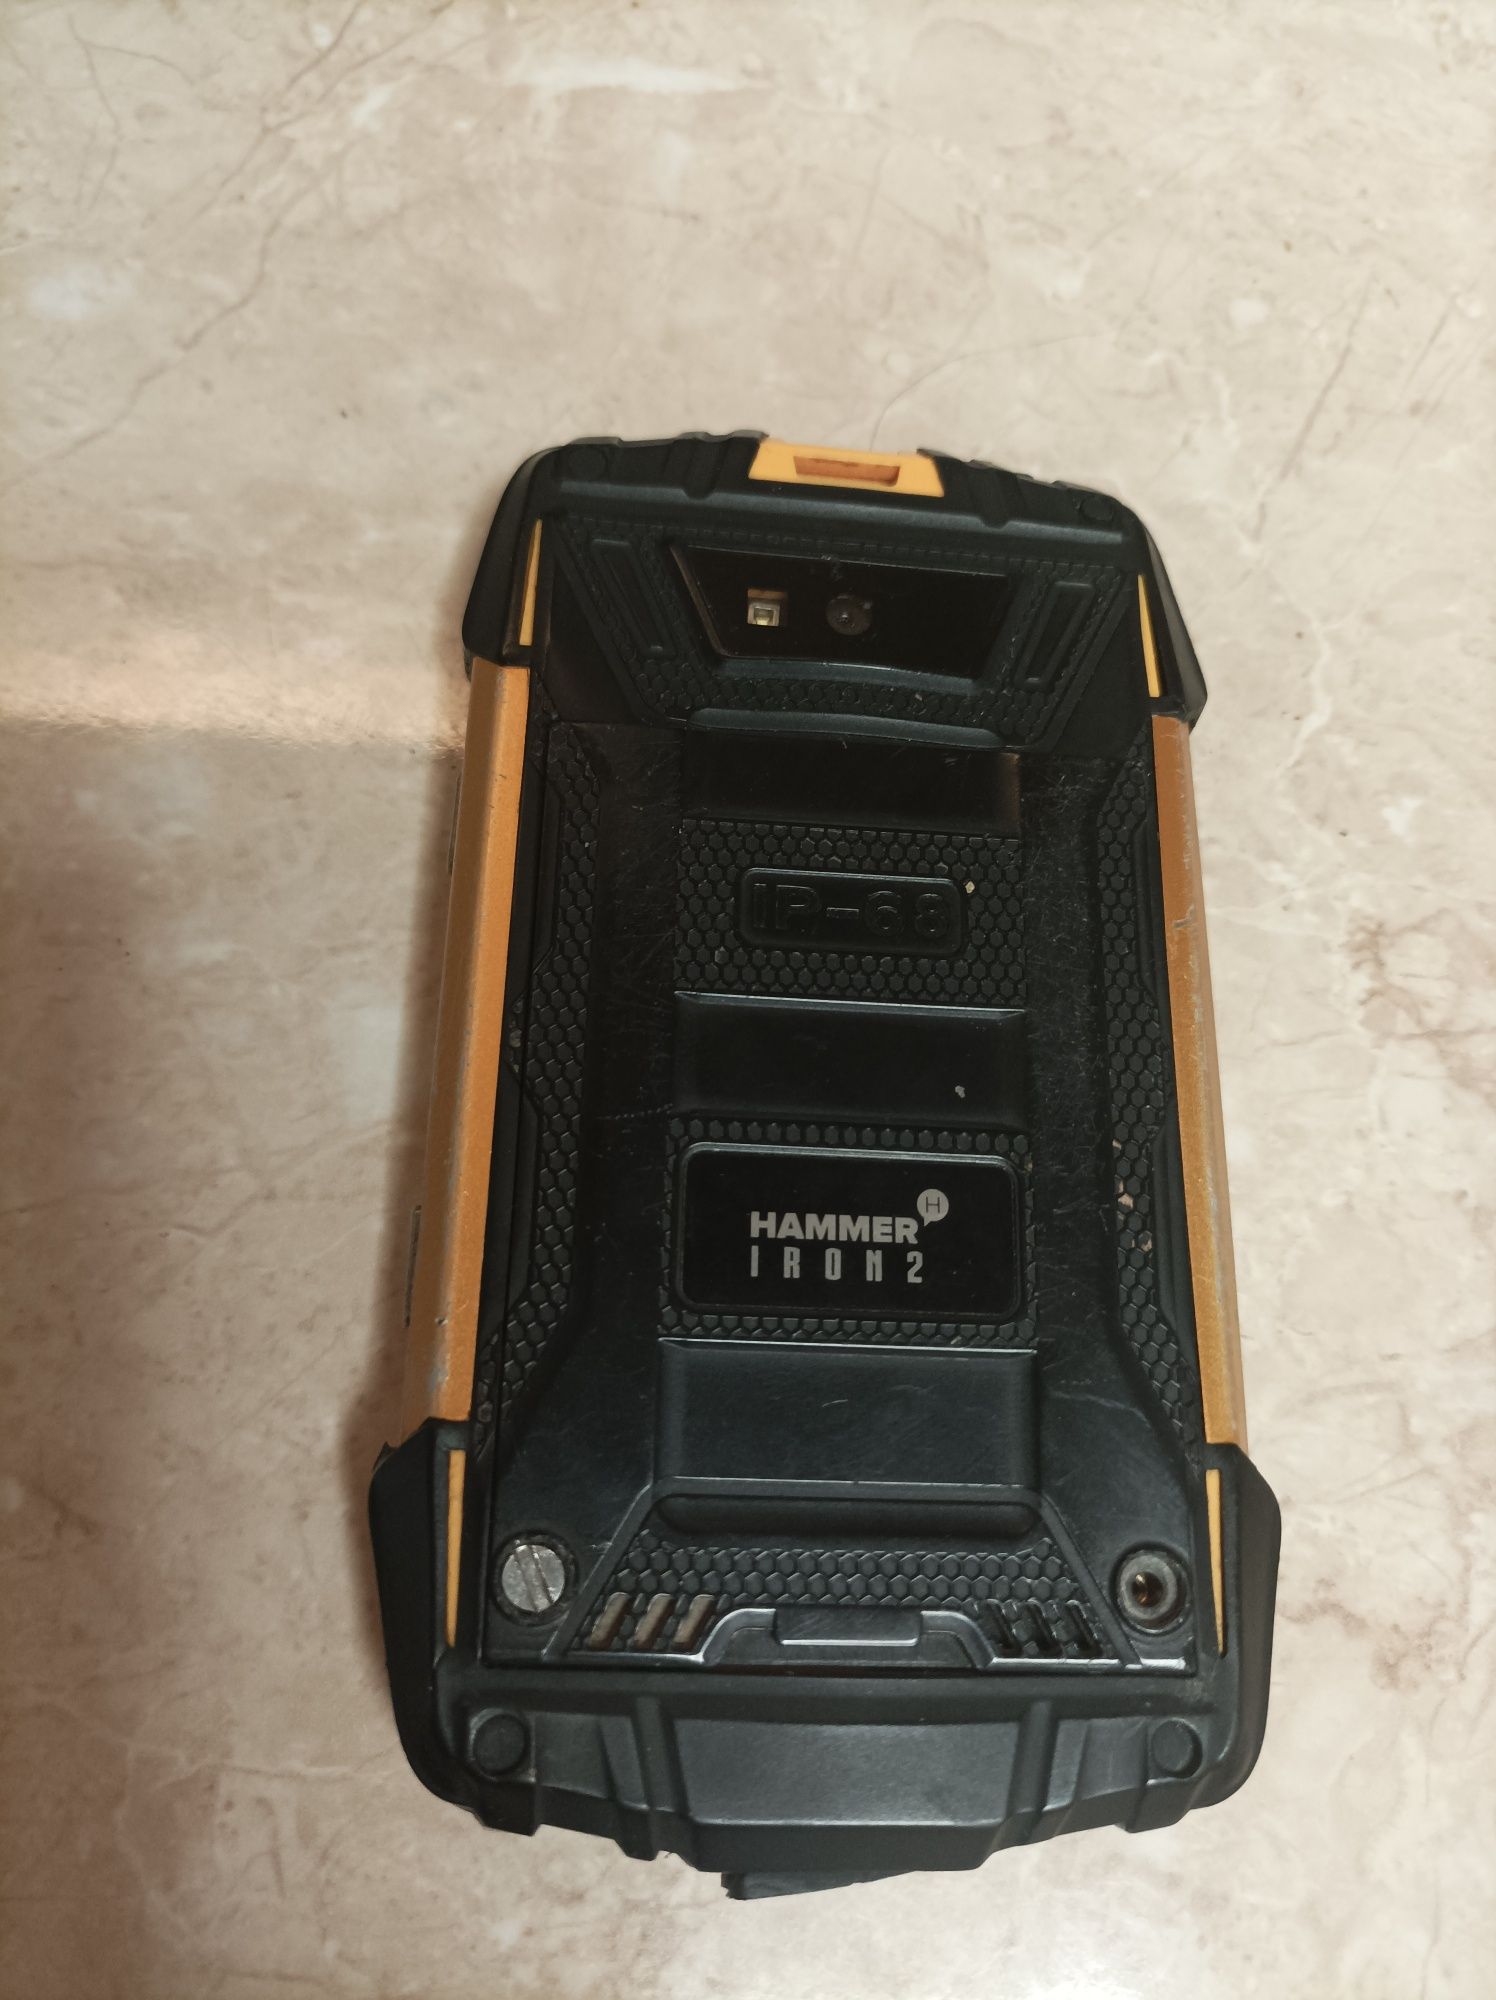 Myphone Hammer Iron2 na części z pudełkiem